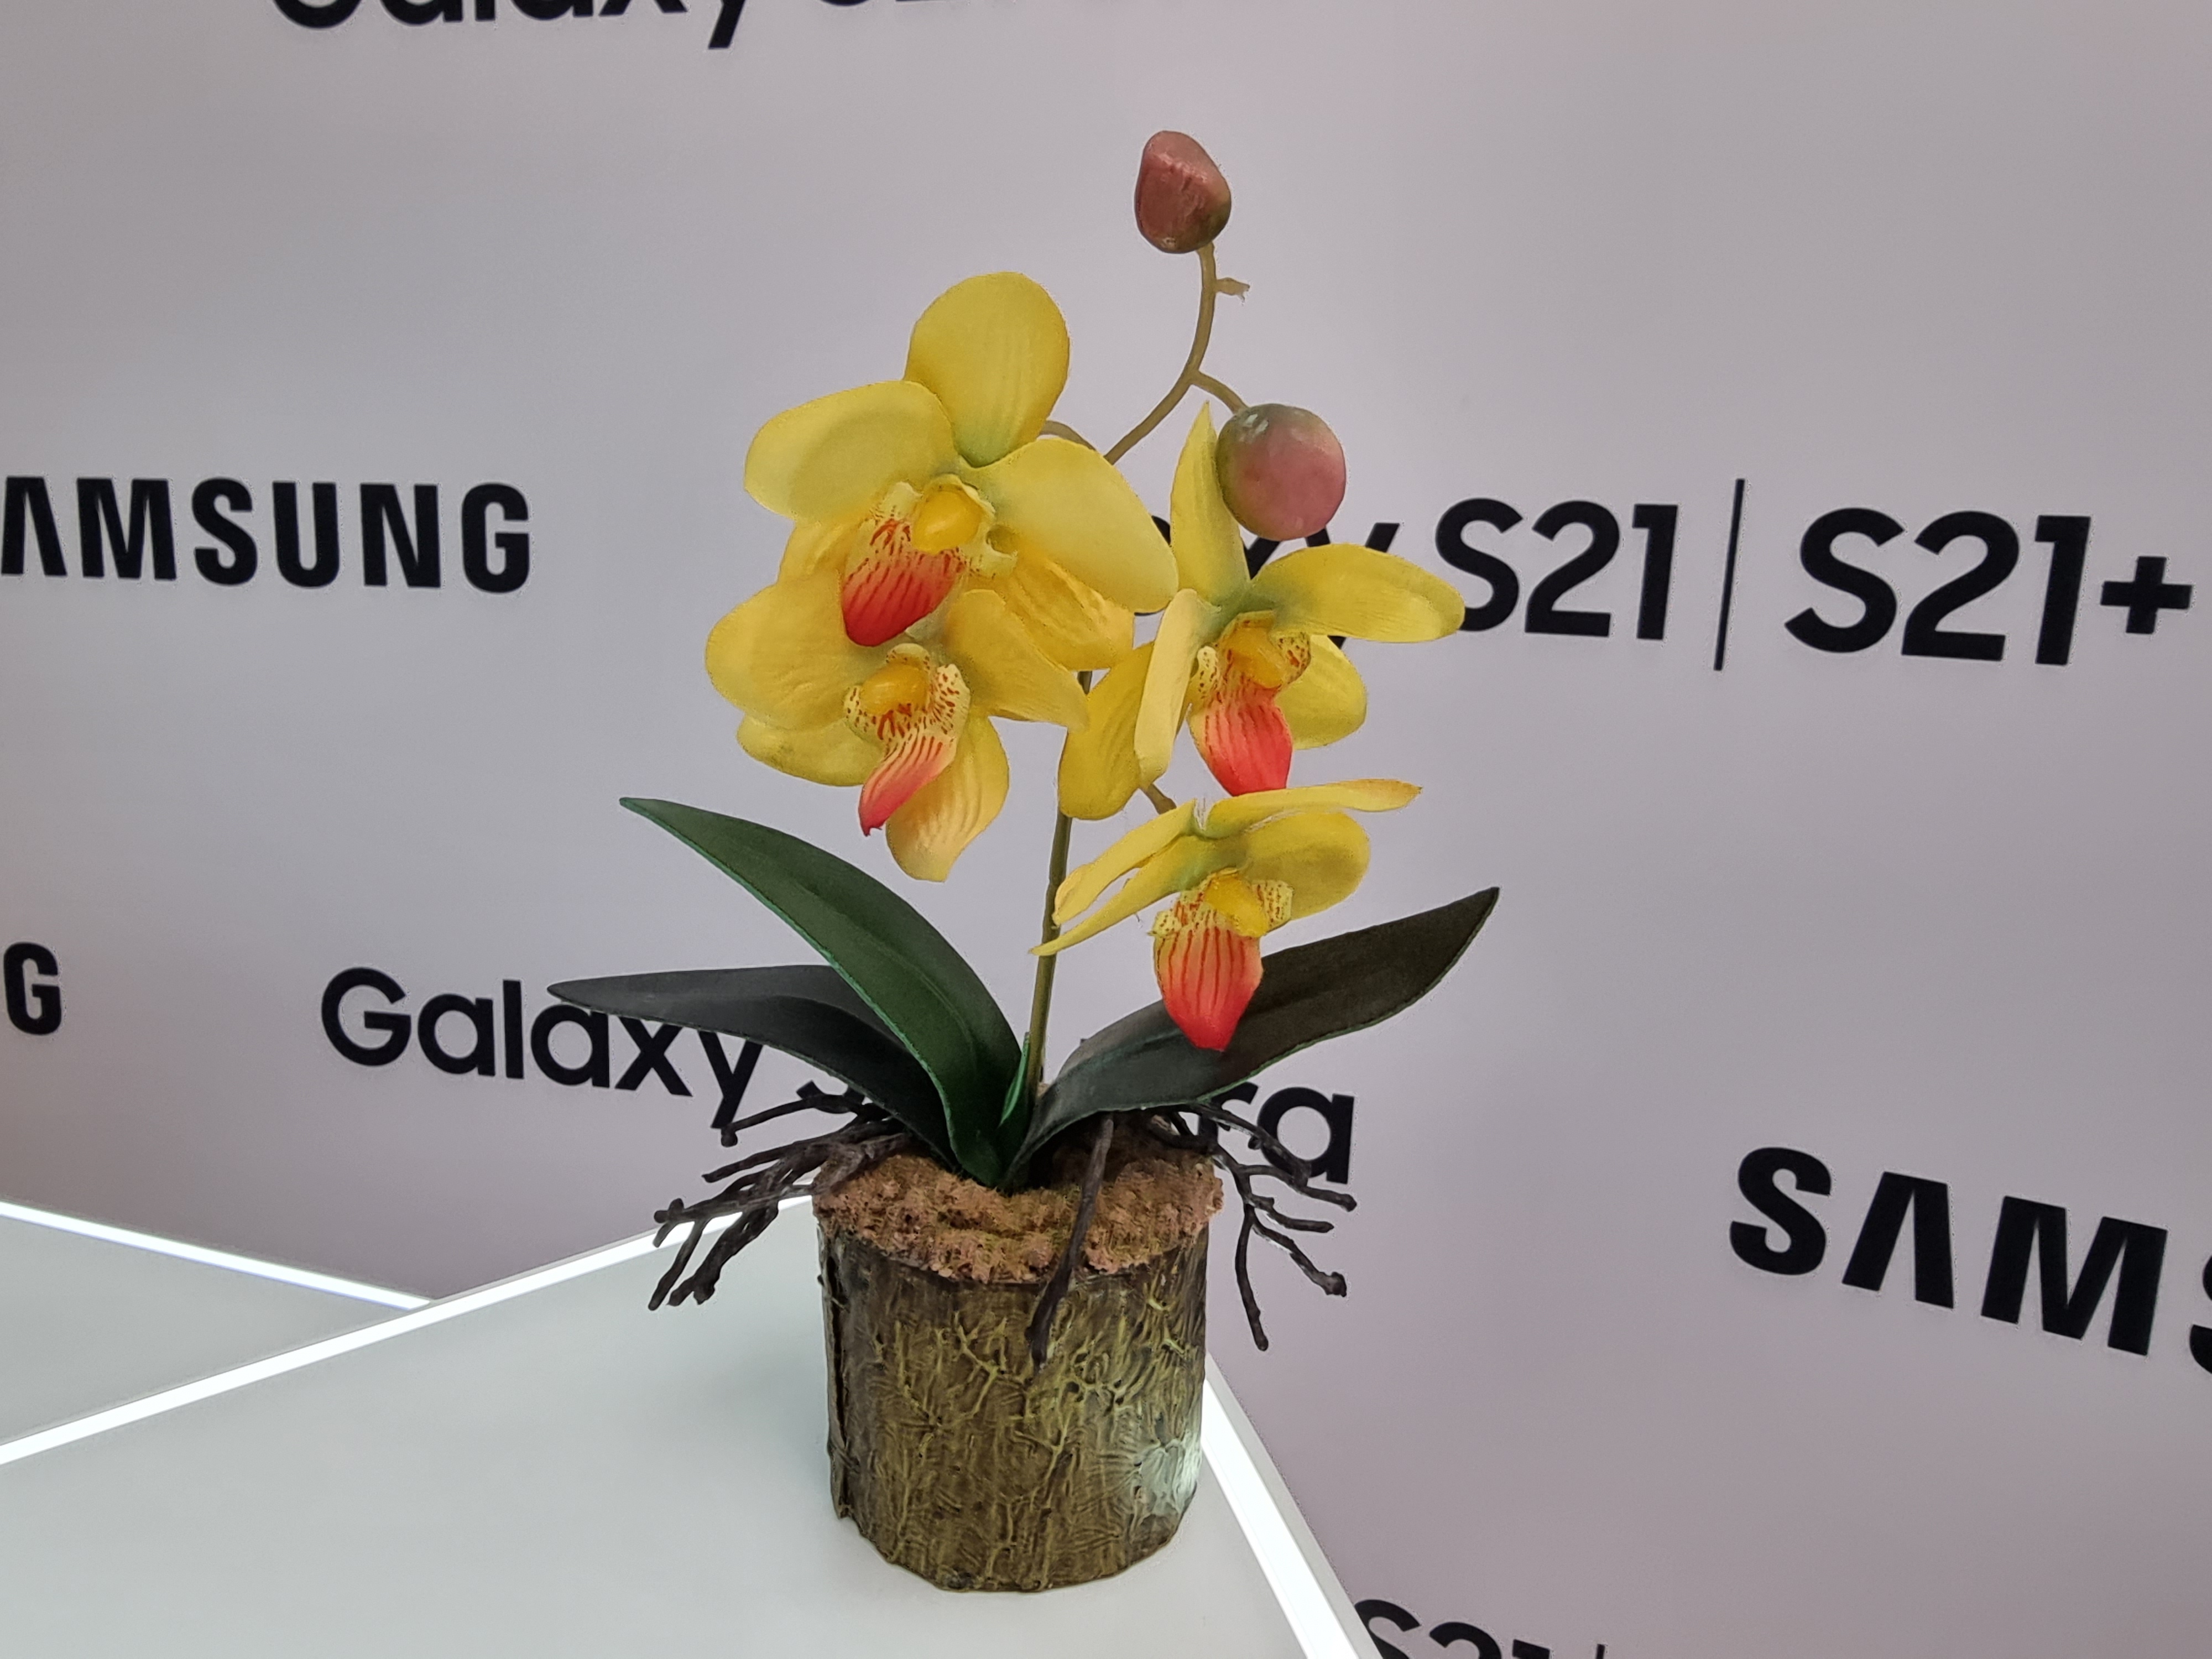 Флагманская линейка Samsung Galaxy S21 и наушники Galaxy Buds Pro своими глазами-38